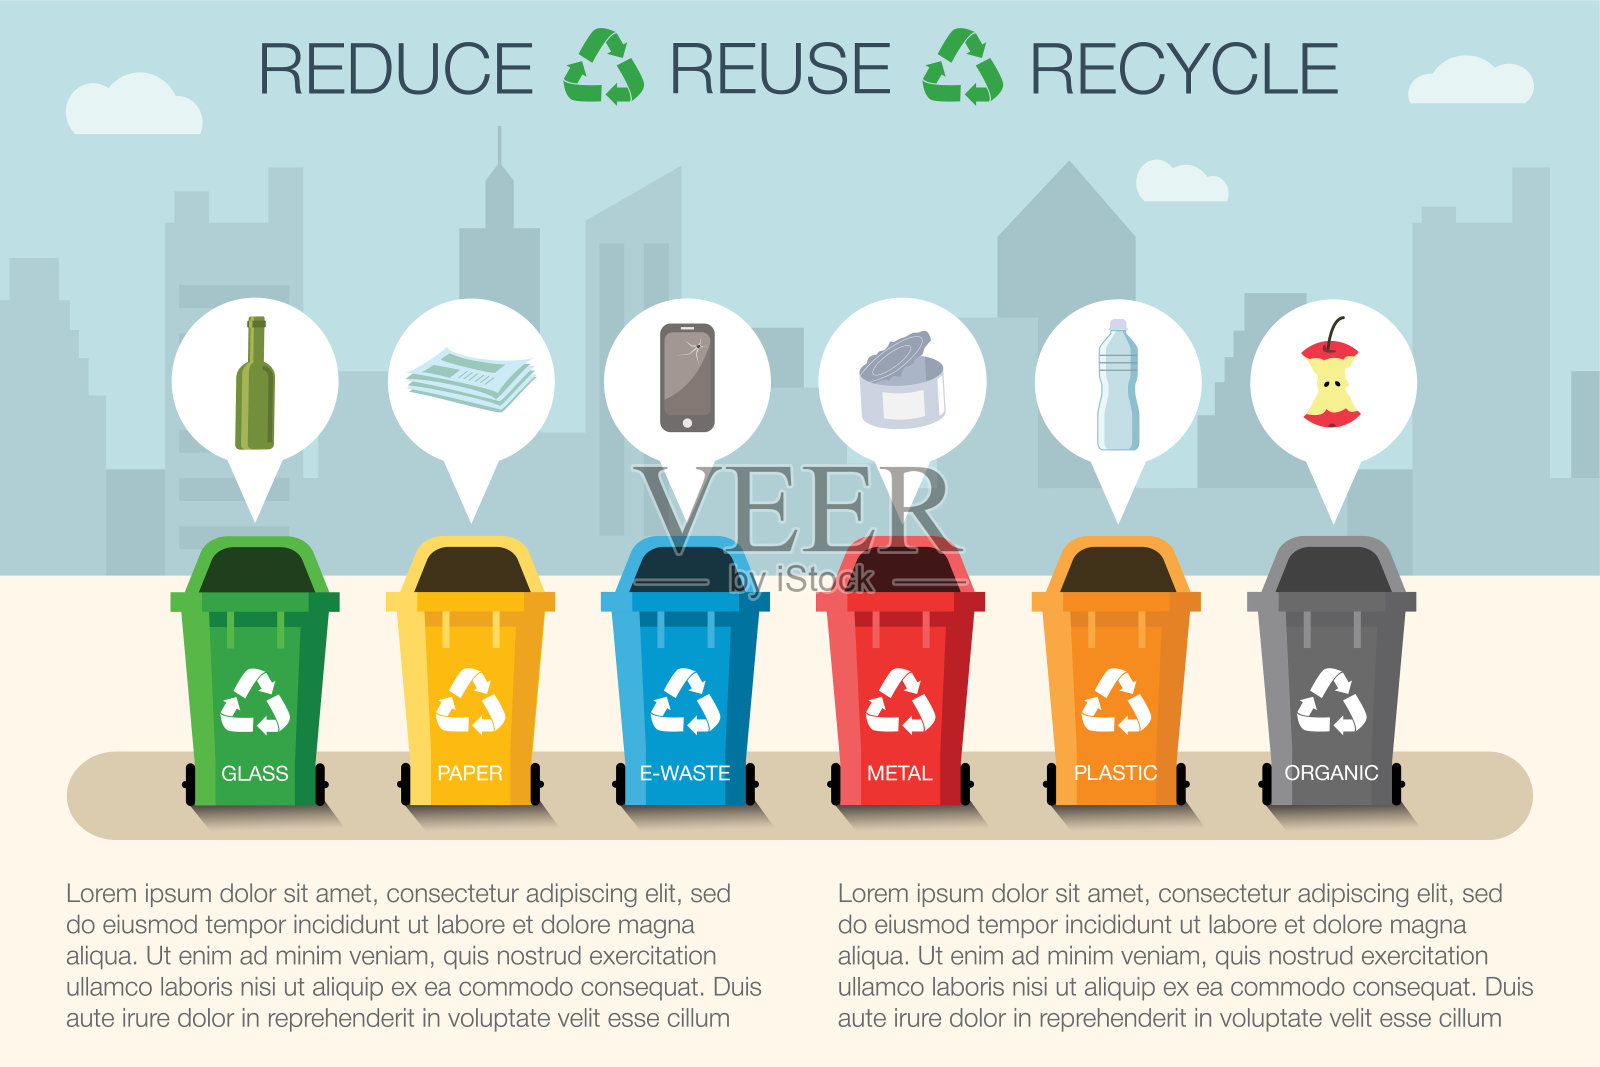 城市景观中不同类型垃圾的塑料容器。废物管理的概念。不同类型的垃圾:有机垃圾，塑料垃圾，金属垃圾，纸张垃圾，玻璃垃圾，电子垃圾。分离回收插画图片素材